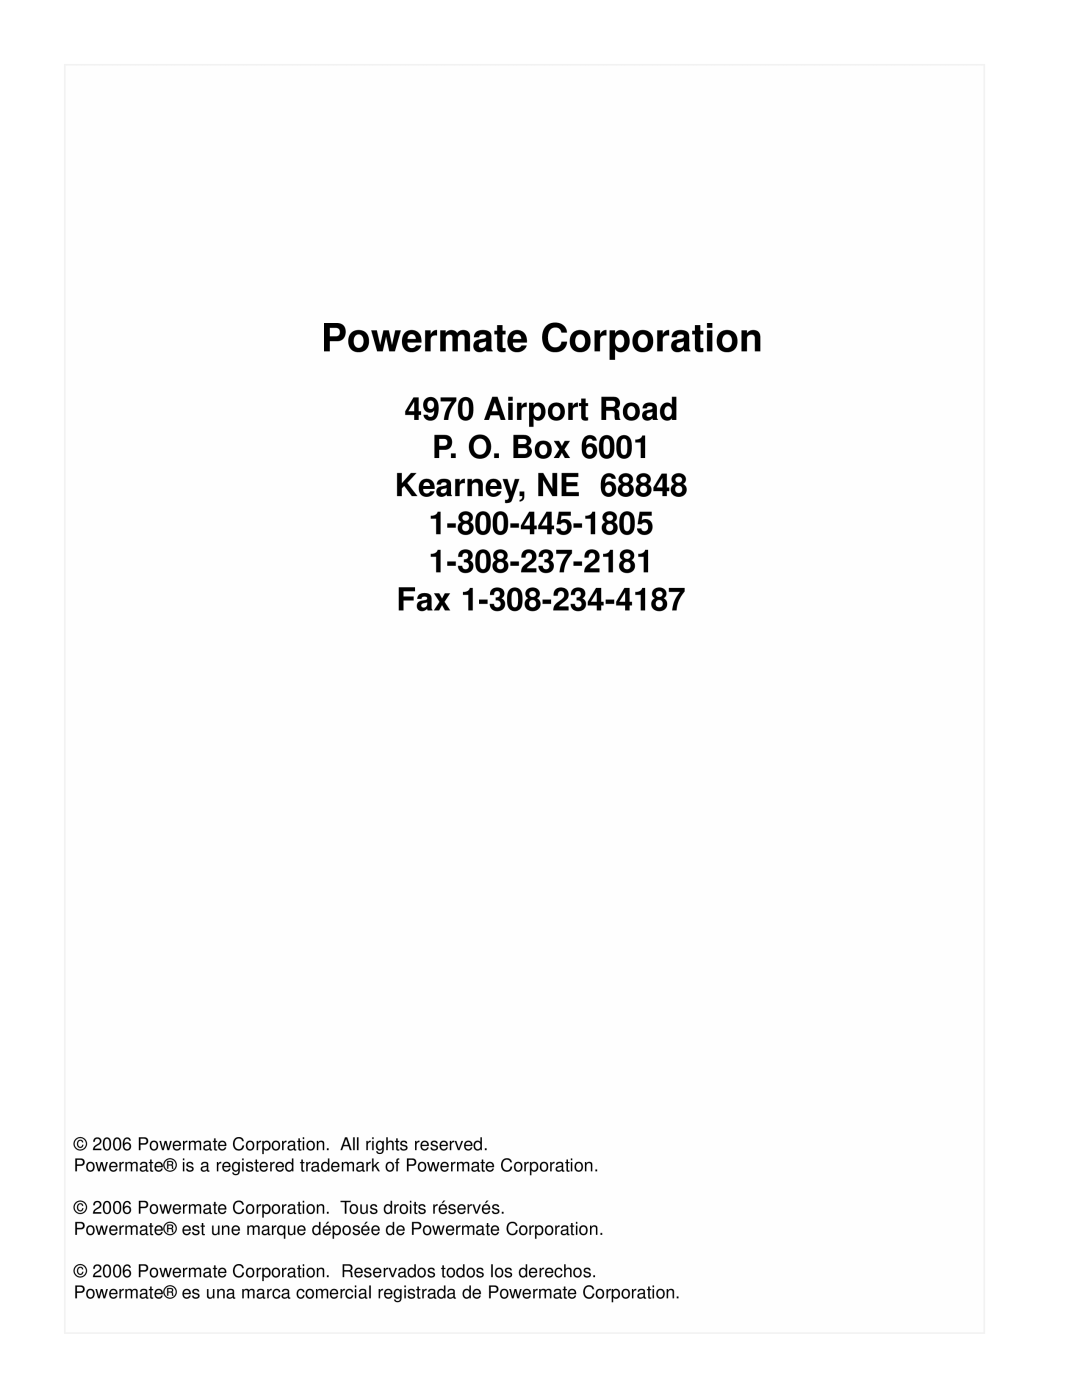 Powermate PM0101400 manual Powermate Corporation, Airport Road P. O. Box Kearney, NE 